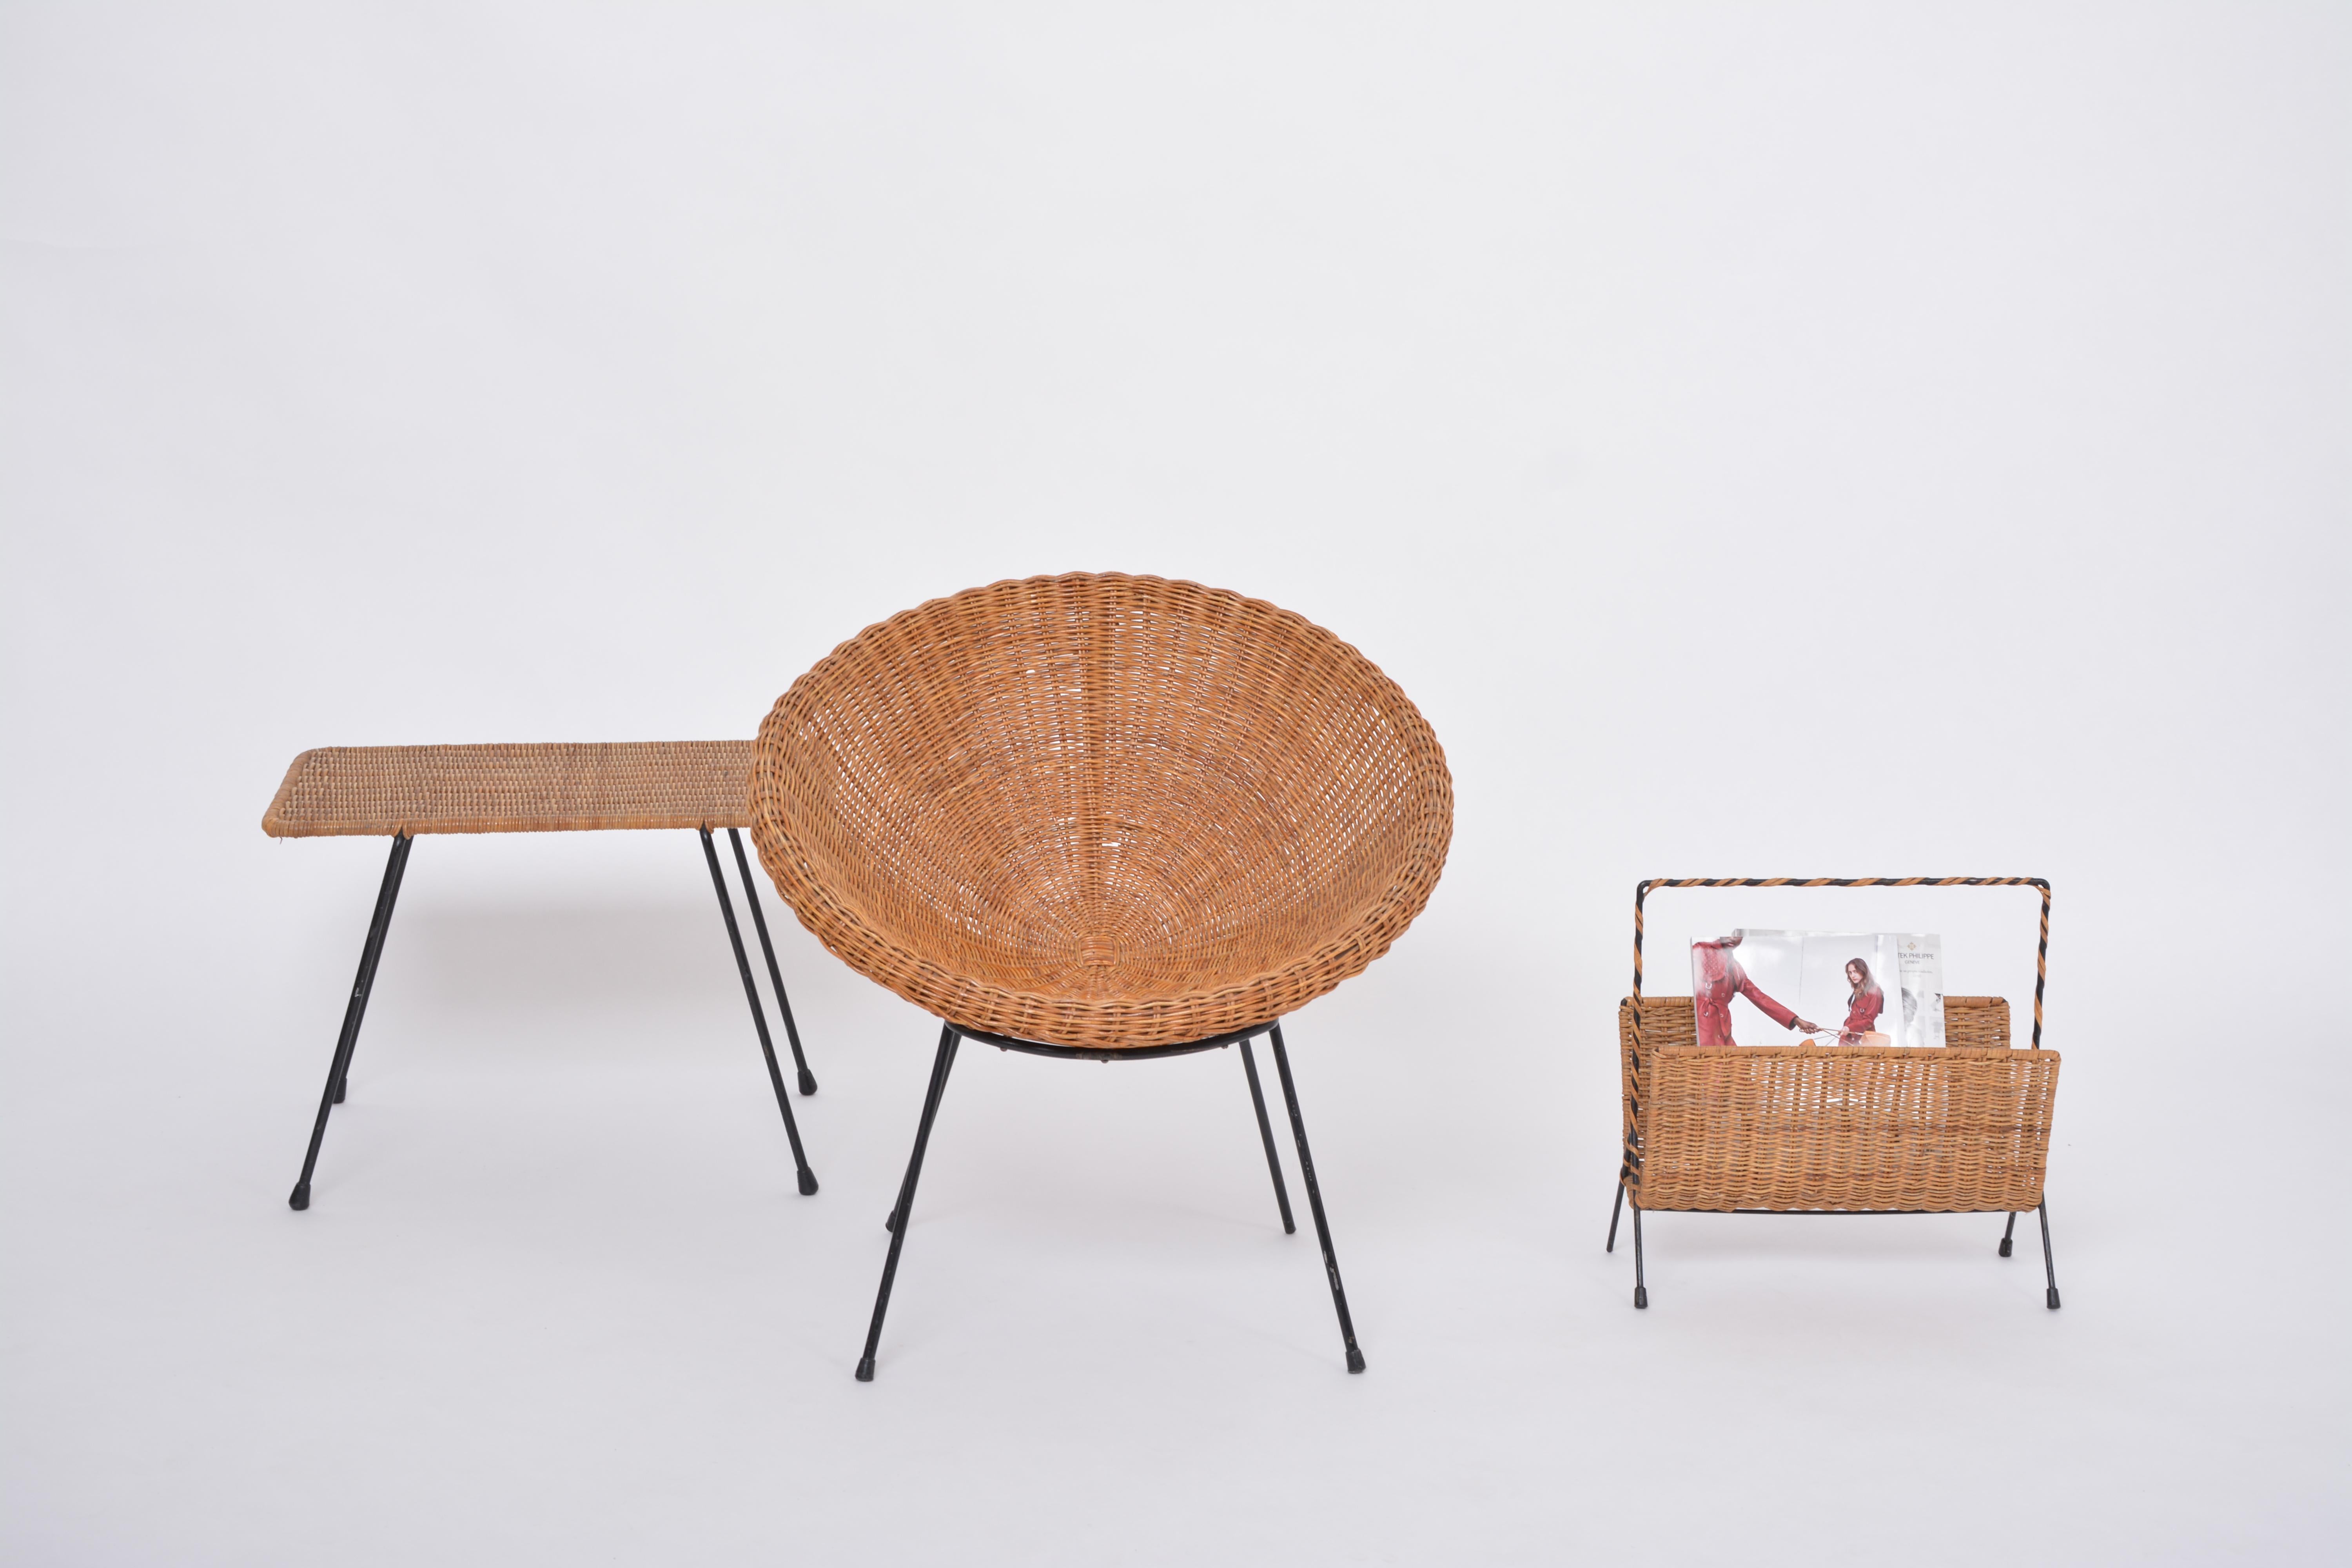 Ensemble de chaises italiennes mi-siècle en rotin avec table d'appoint et porte-revues

Cet ensemble de meubles en rotin a été fabriqué probablement dans les années 1950 en Italie. 
Il se compose d'un fauteuil bol captivant, d'une petite table